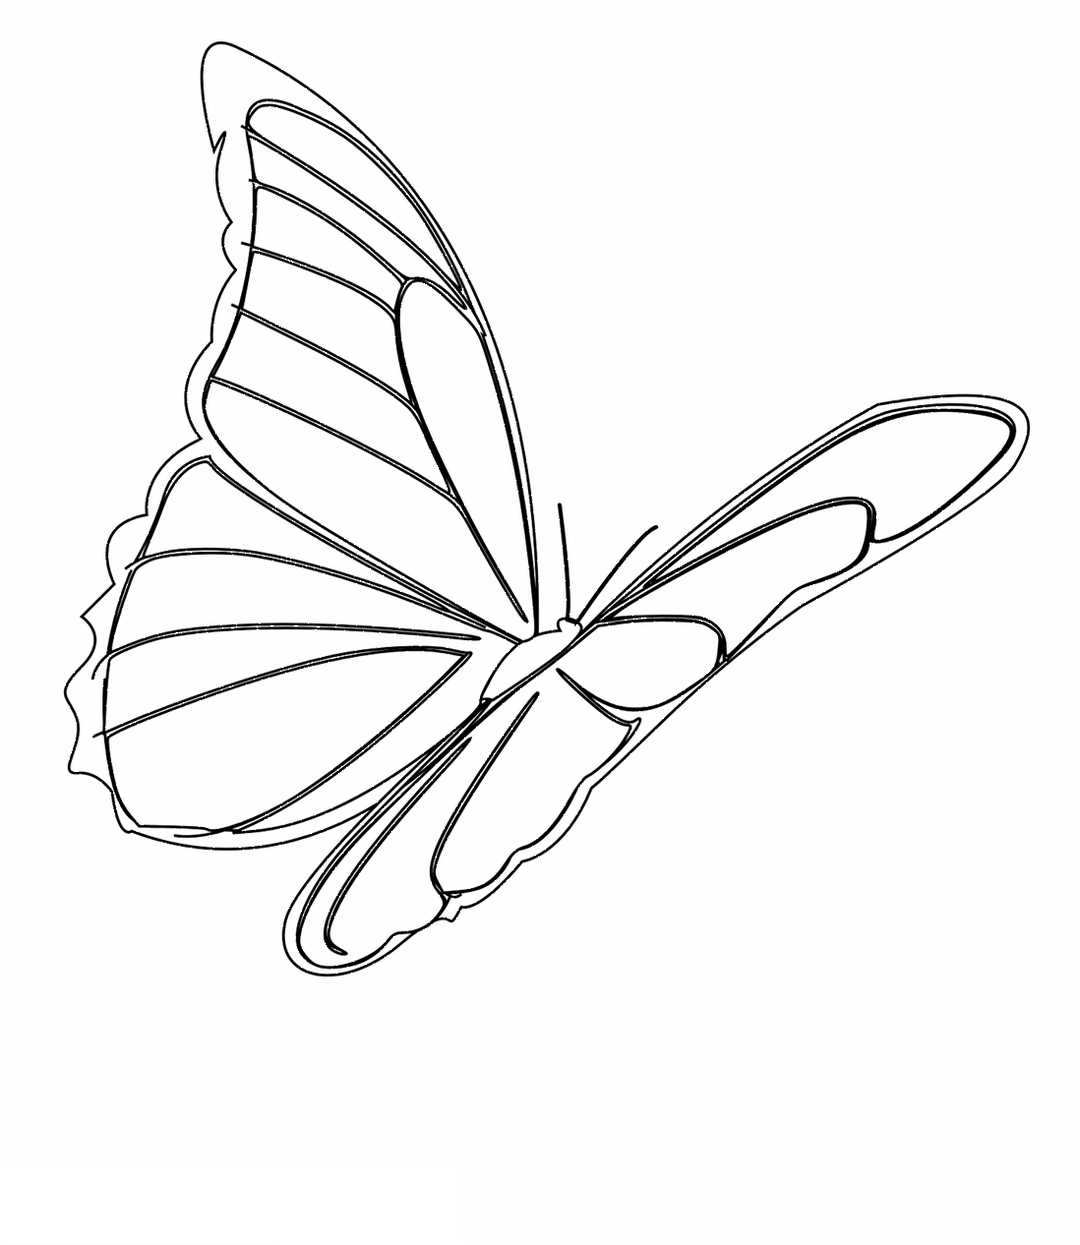 Vẽ con bướm - Không chỉ dành cho người có năng khiếu